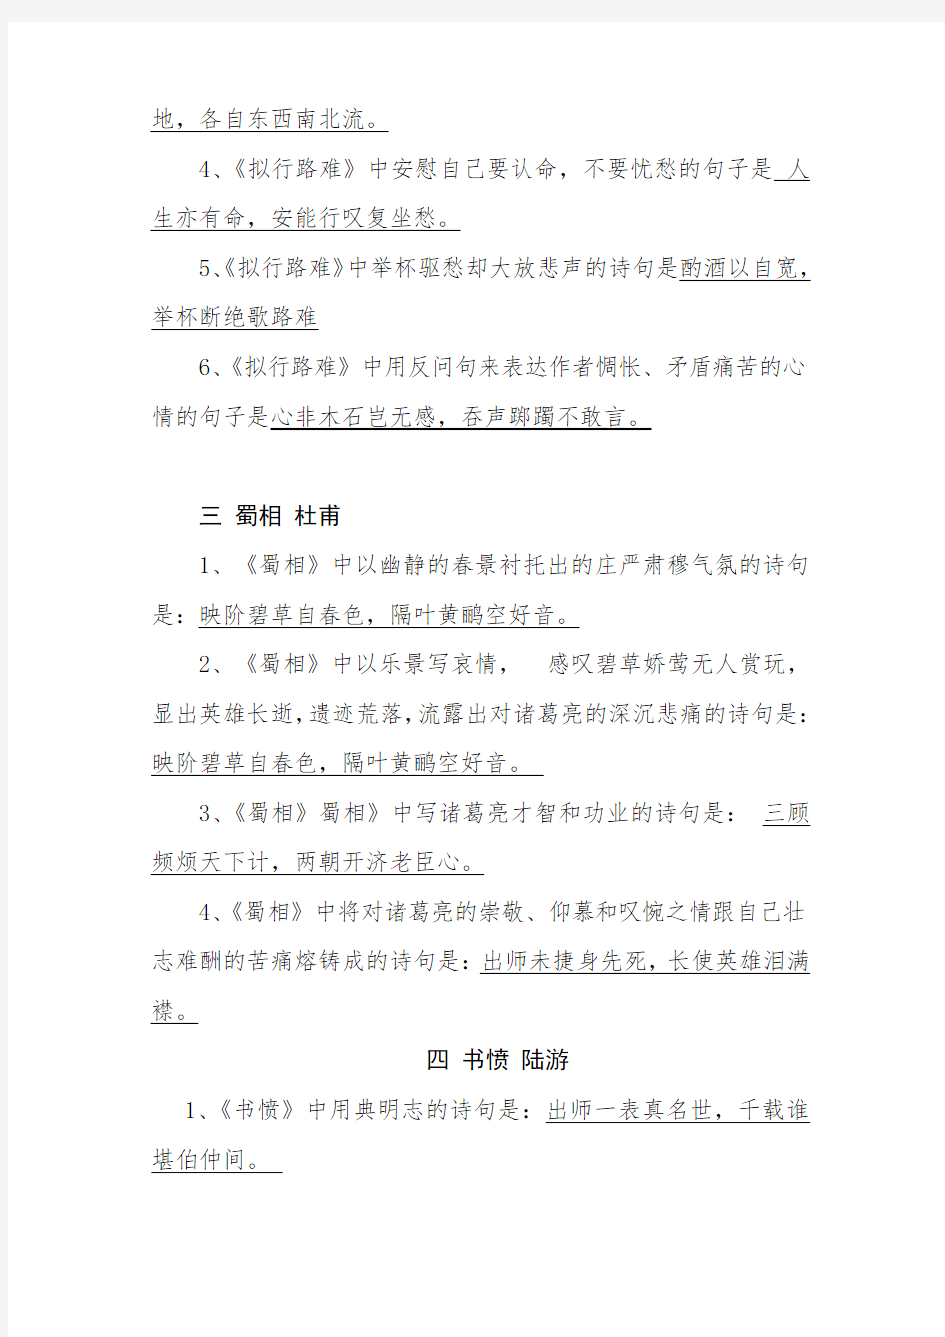 选修中国古代诗歌散文欣赏(情景式默写)所有要求背诵的篇目